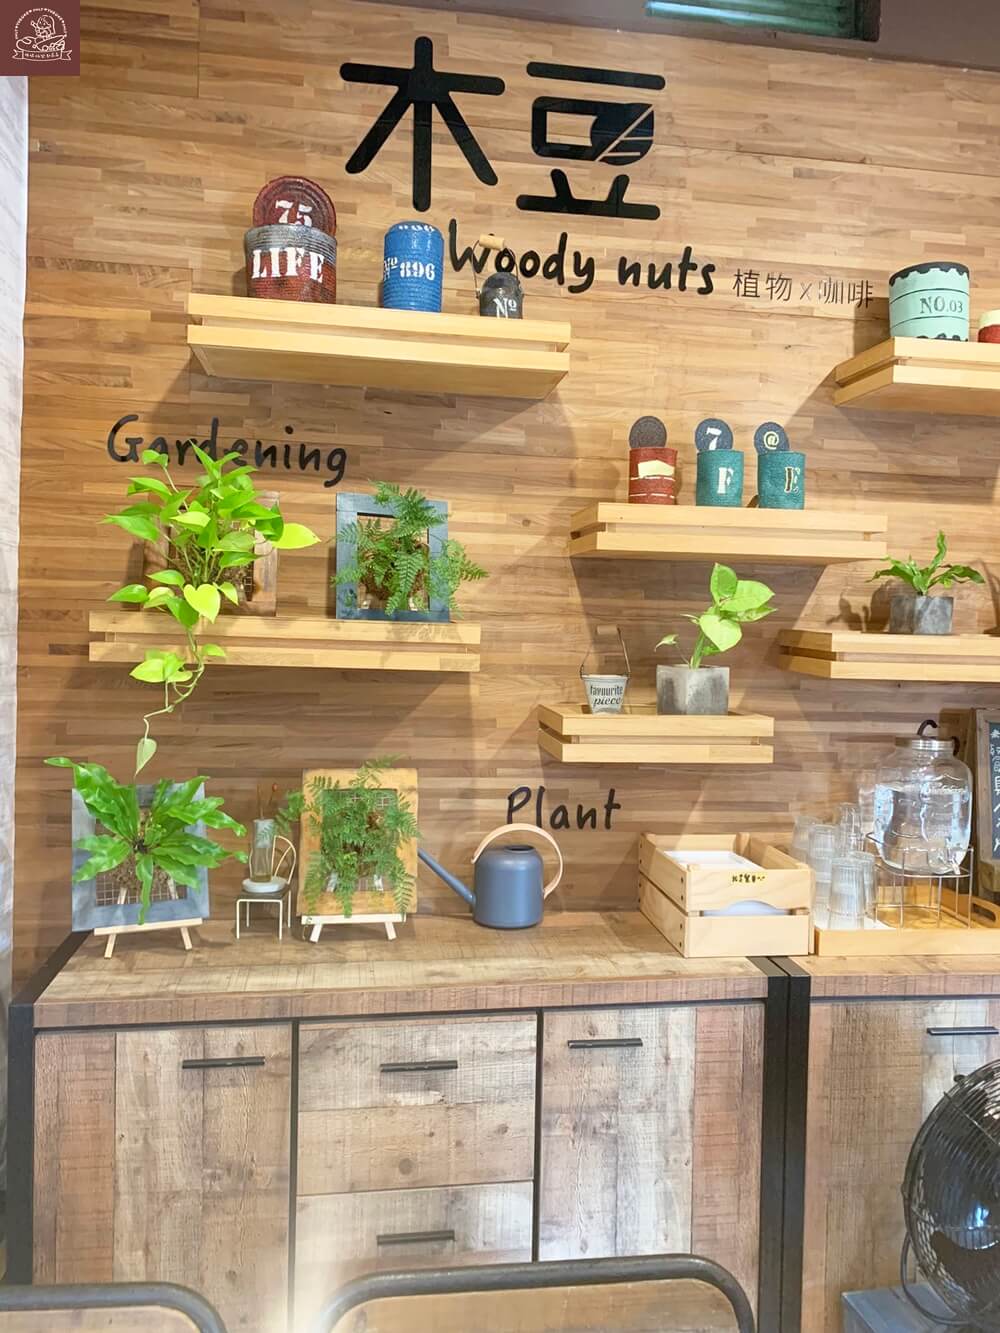 中興新村咖啡廳木豆咖啡